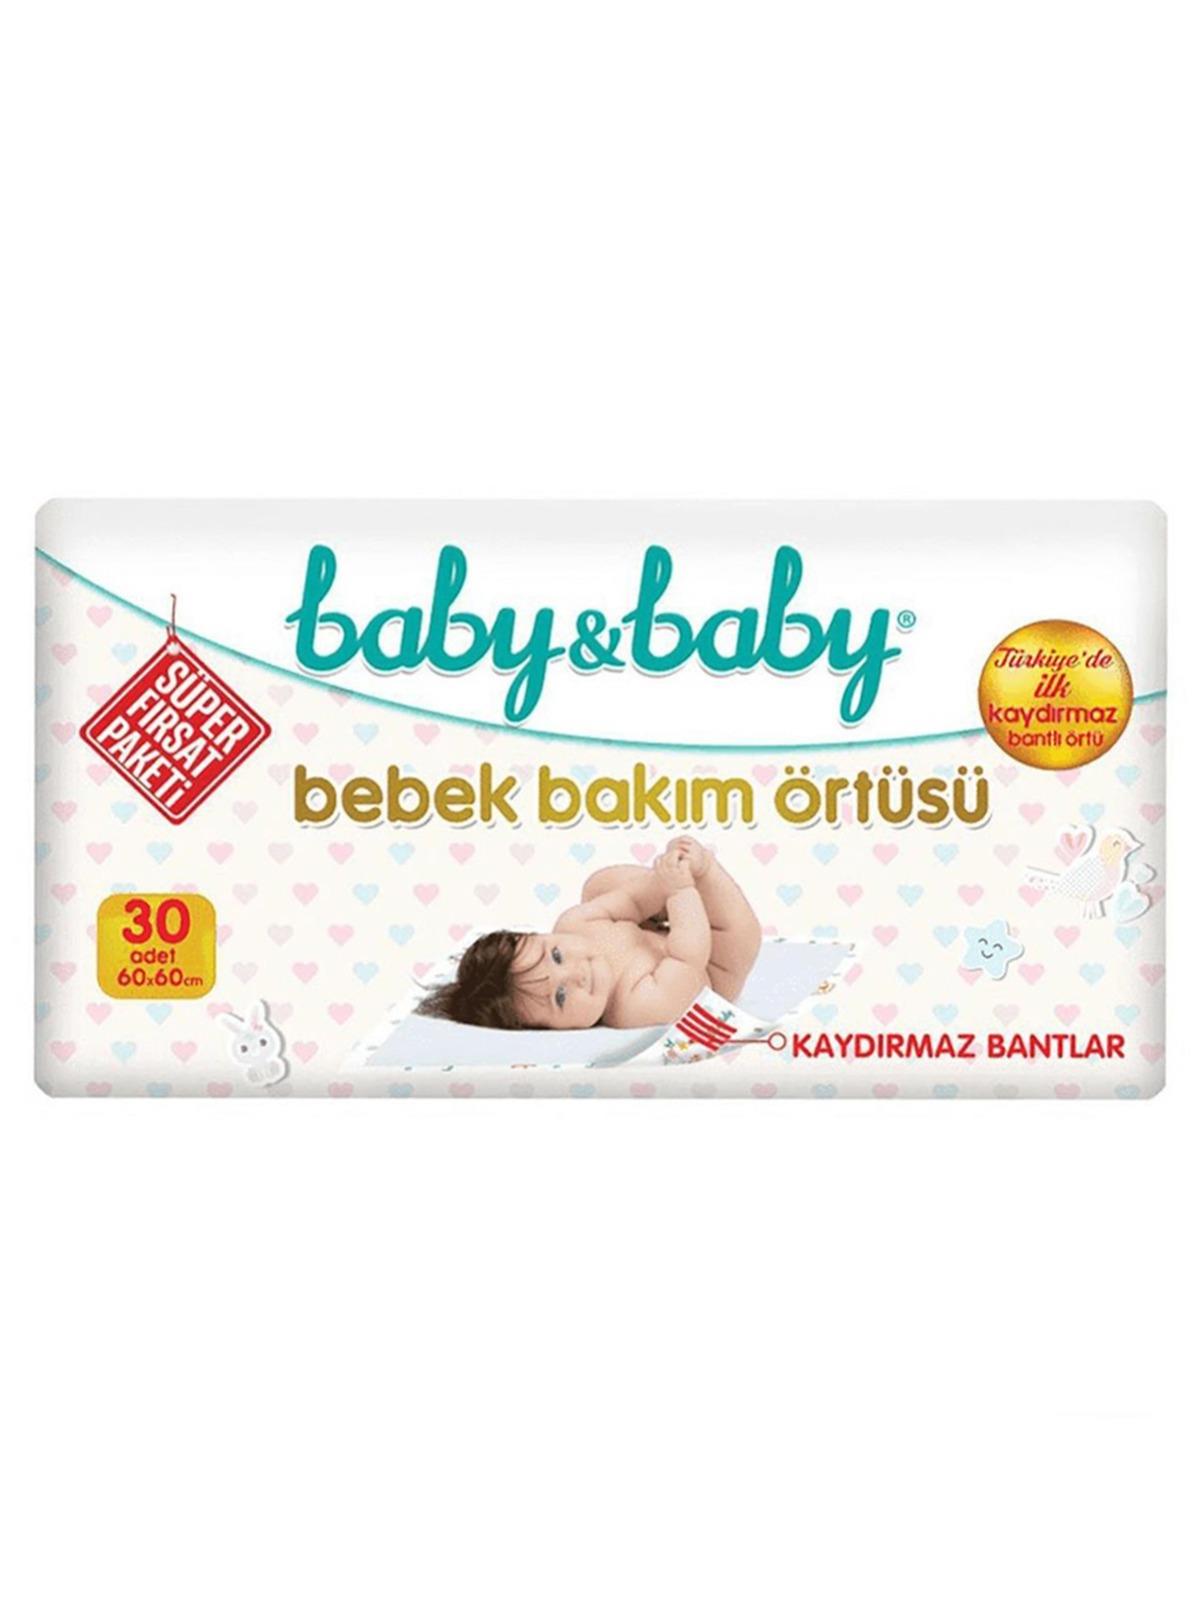 Baby&Baby Kaydırmaz Bantlı Bakım Örtüsü 60x60 cm 30 Adet Avantaj Paket